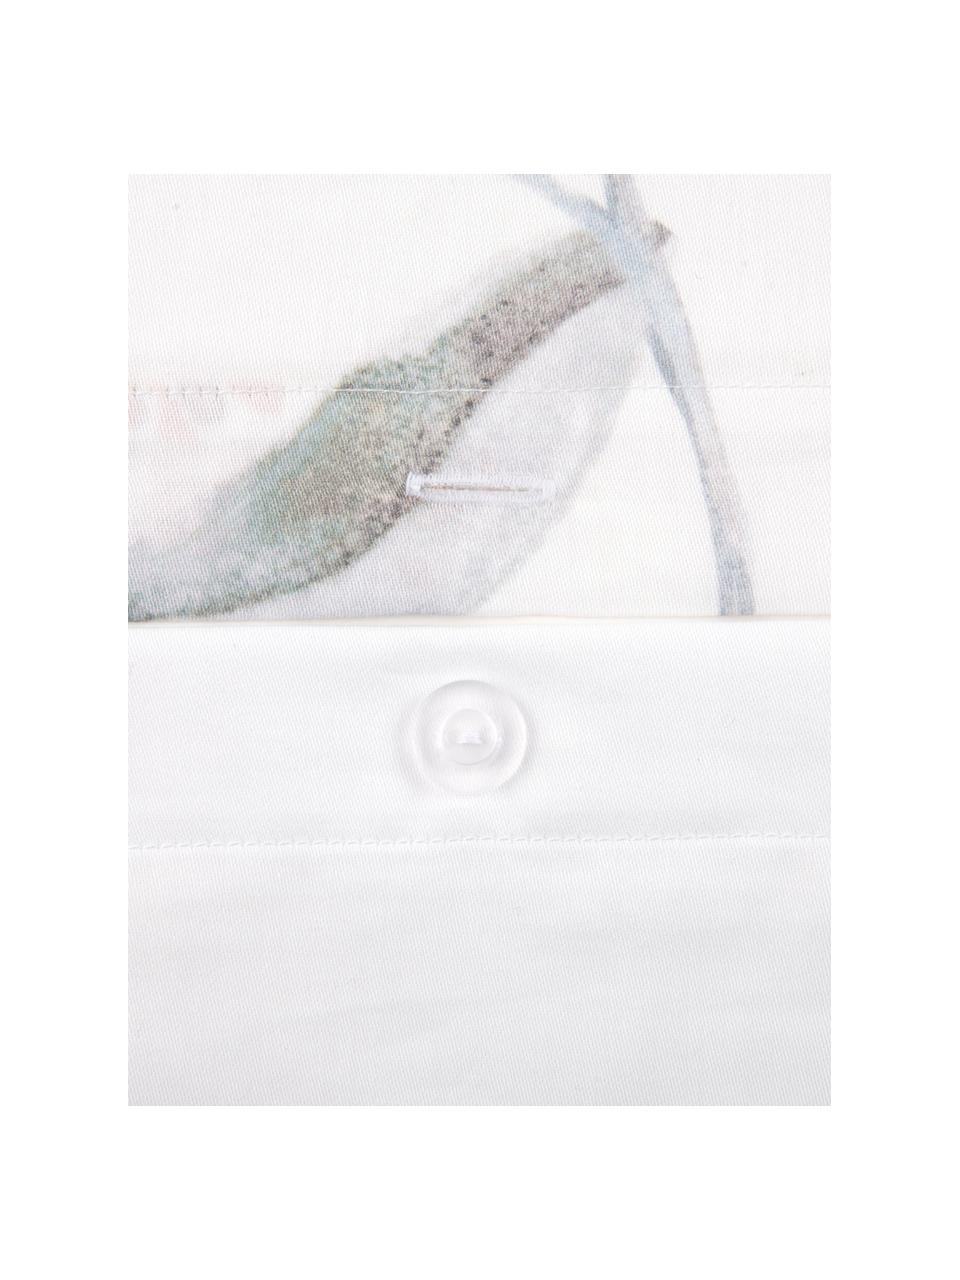 Taies d'oreiller réversible en satin de coton Evie, 2 pièces, 50 x 70 cm, Blanc, multicolore, larg. 50 x long. 70 cm